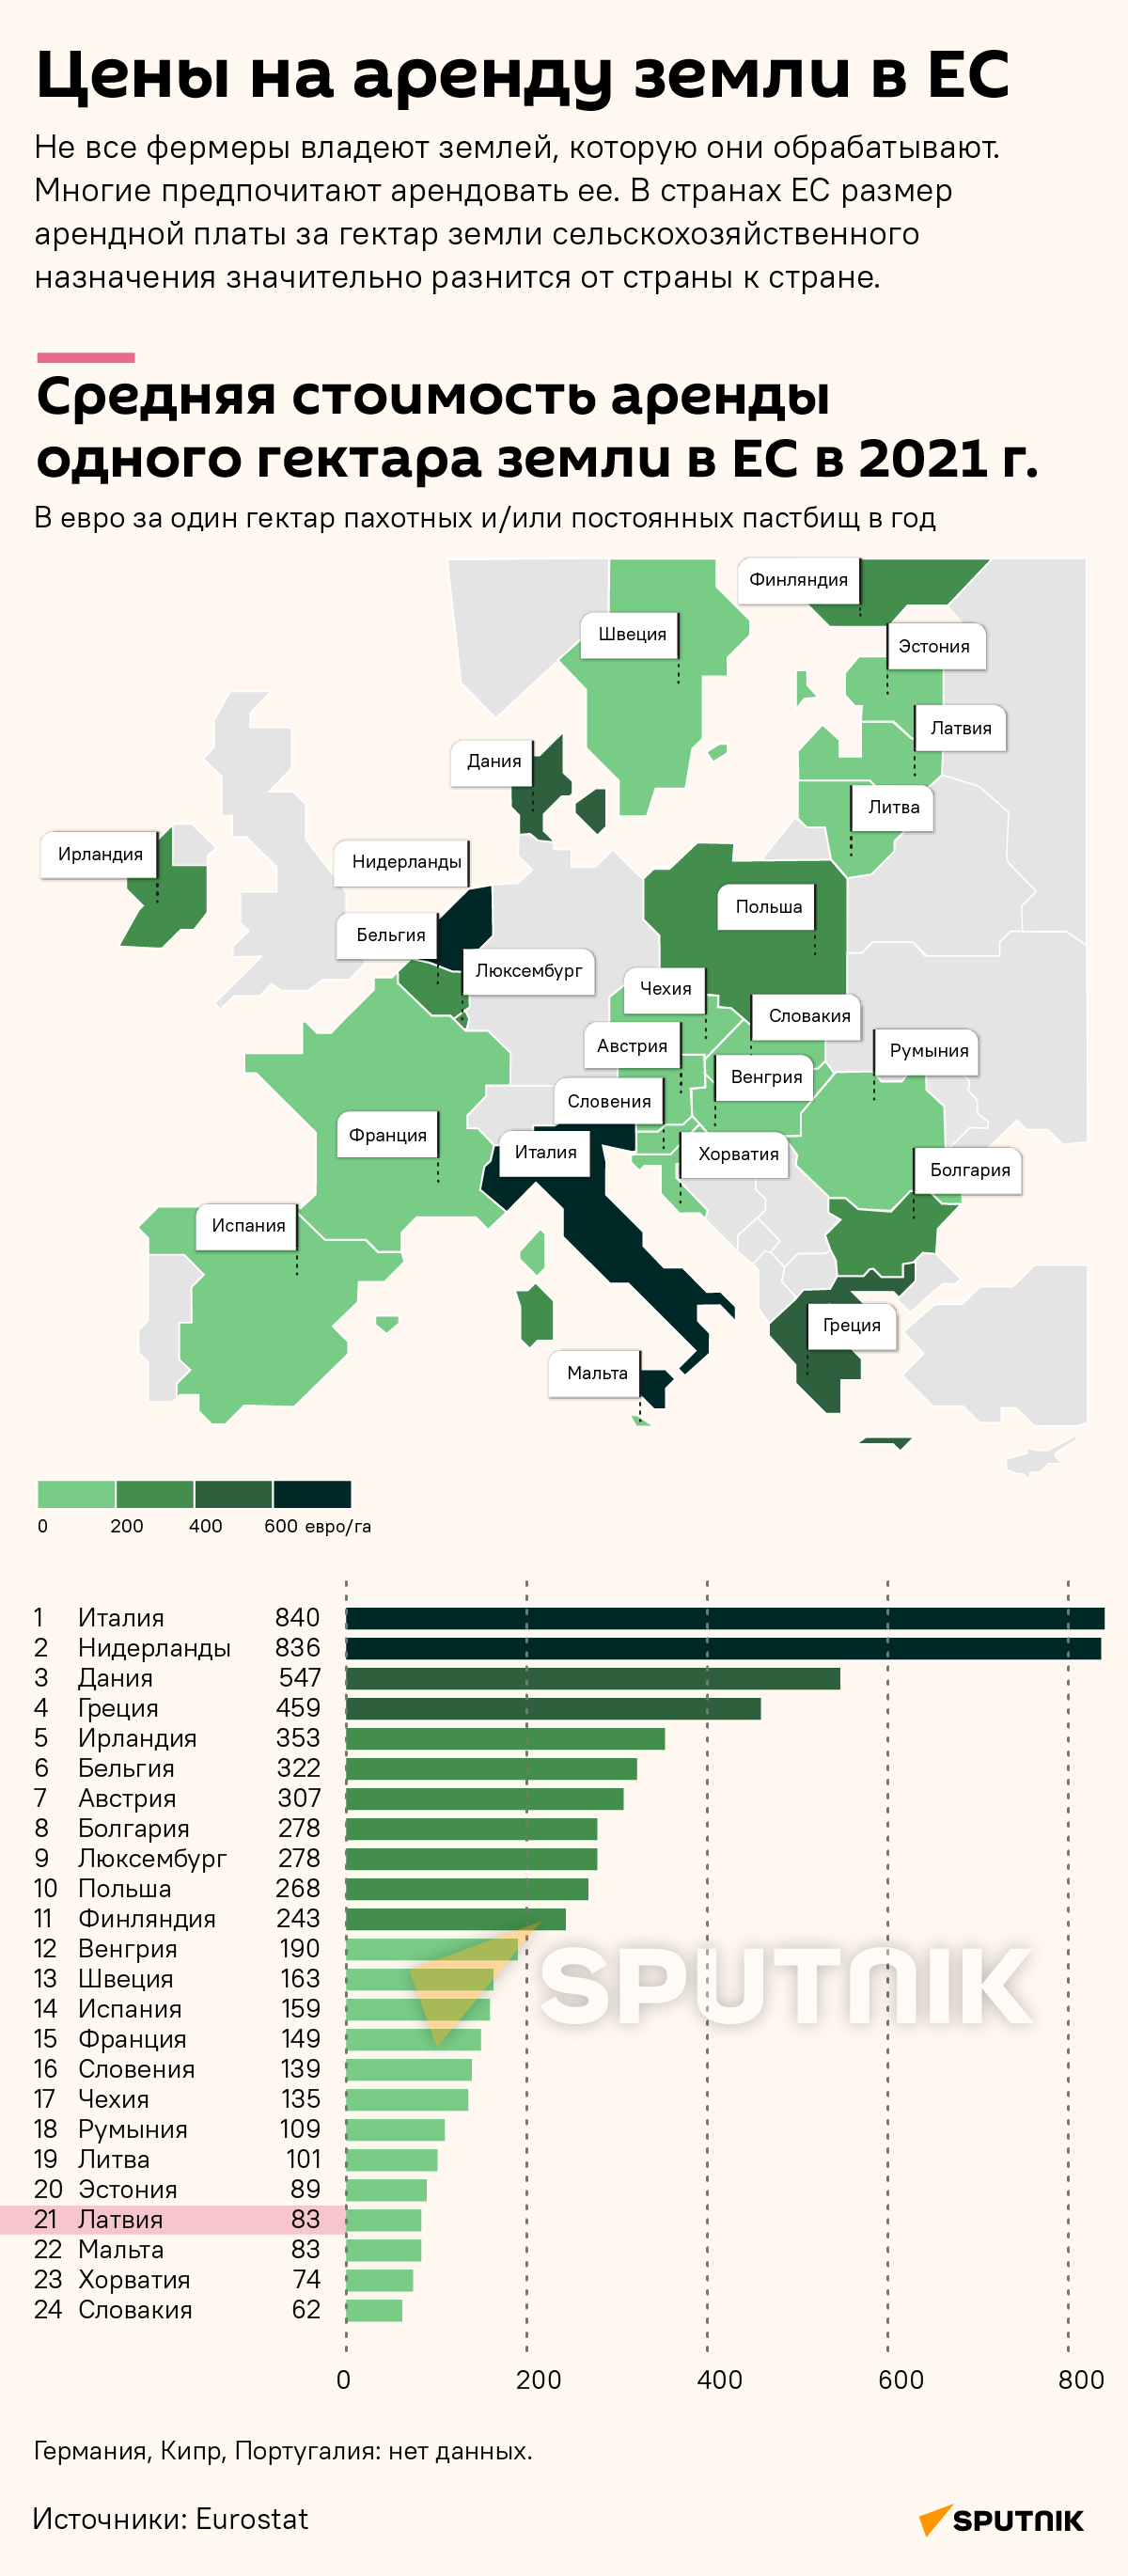 Цены на аренду земли в ЕС - Sputnik Латвия